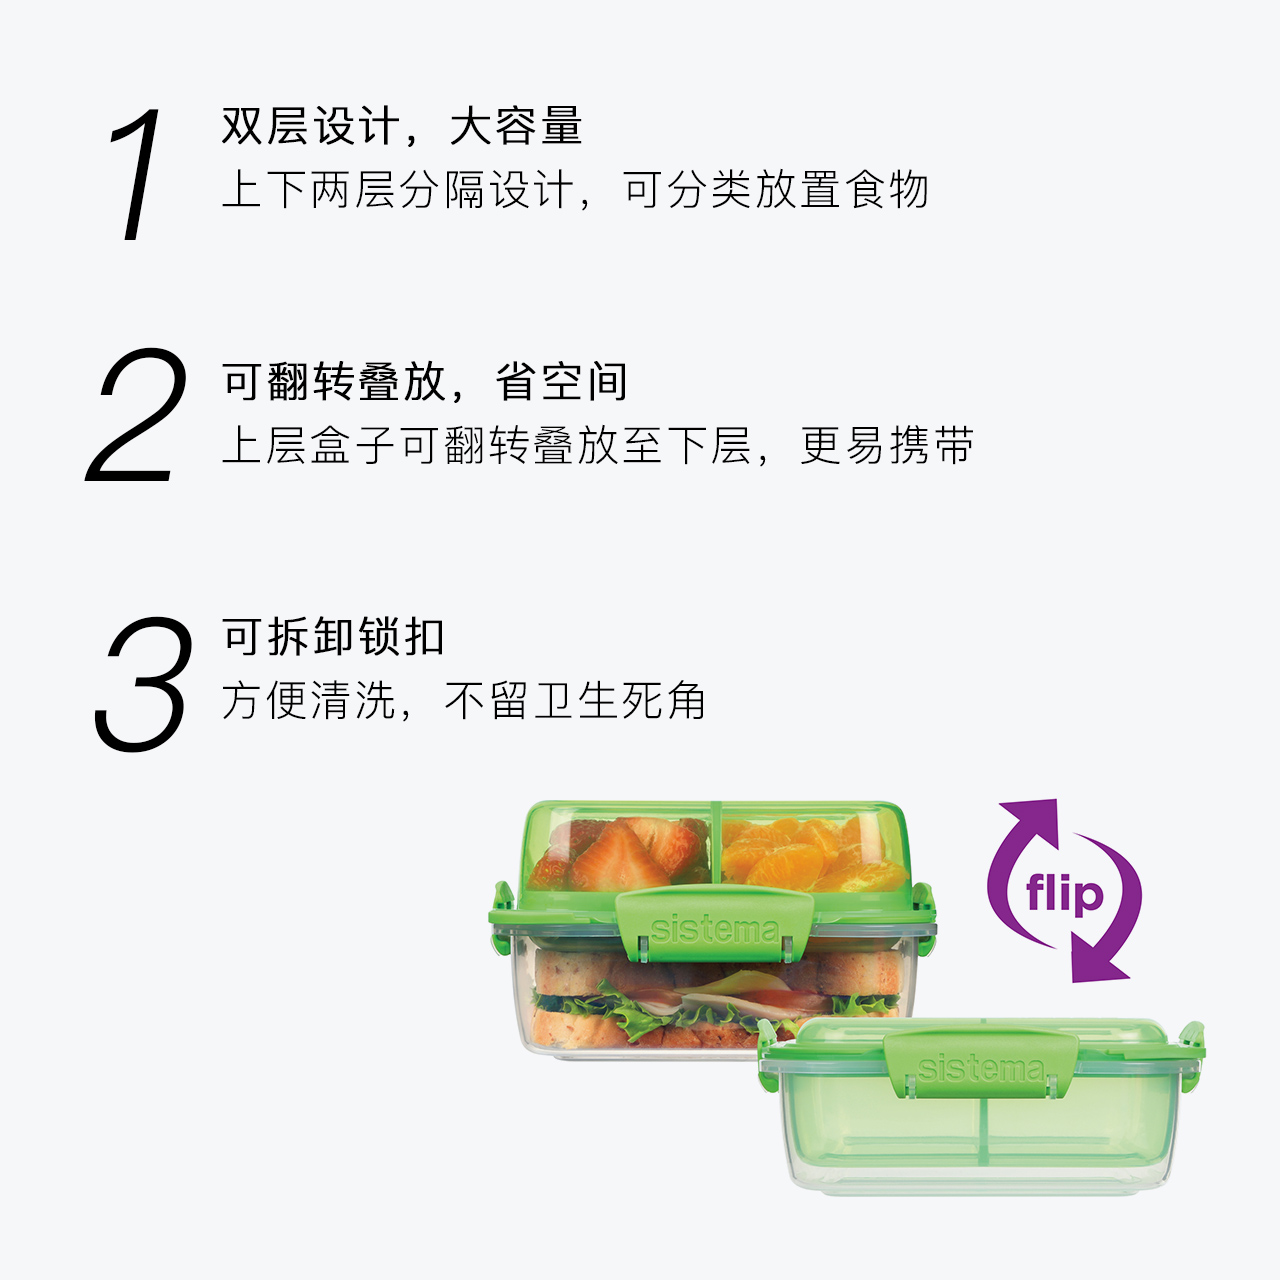 新西兰进口 sistema正品 便携三明治盒水果盒早餐盒 可微波炉加热 - 图1